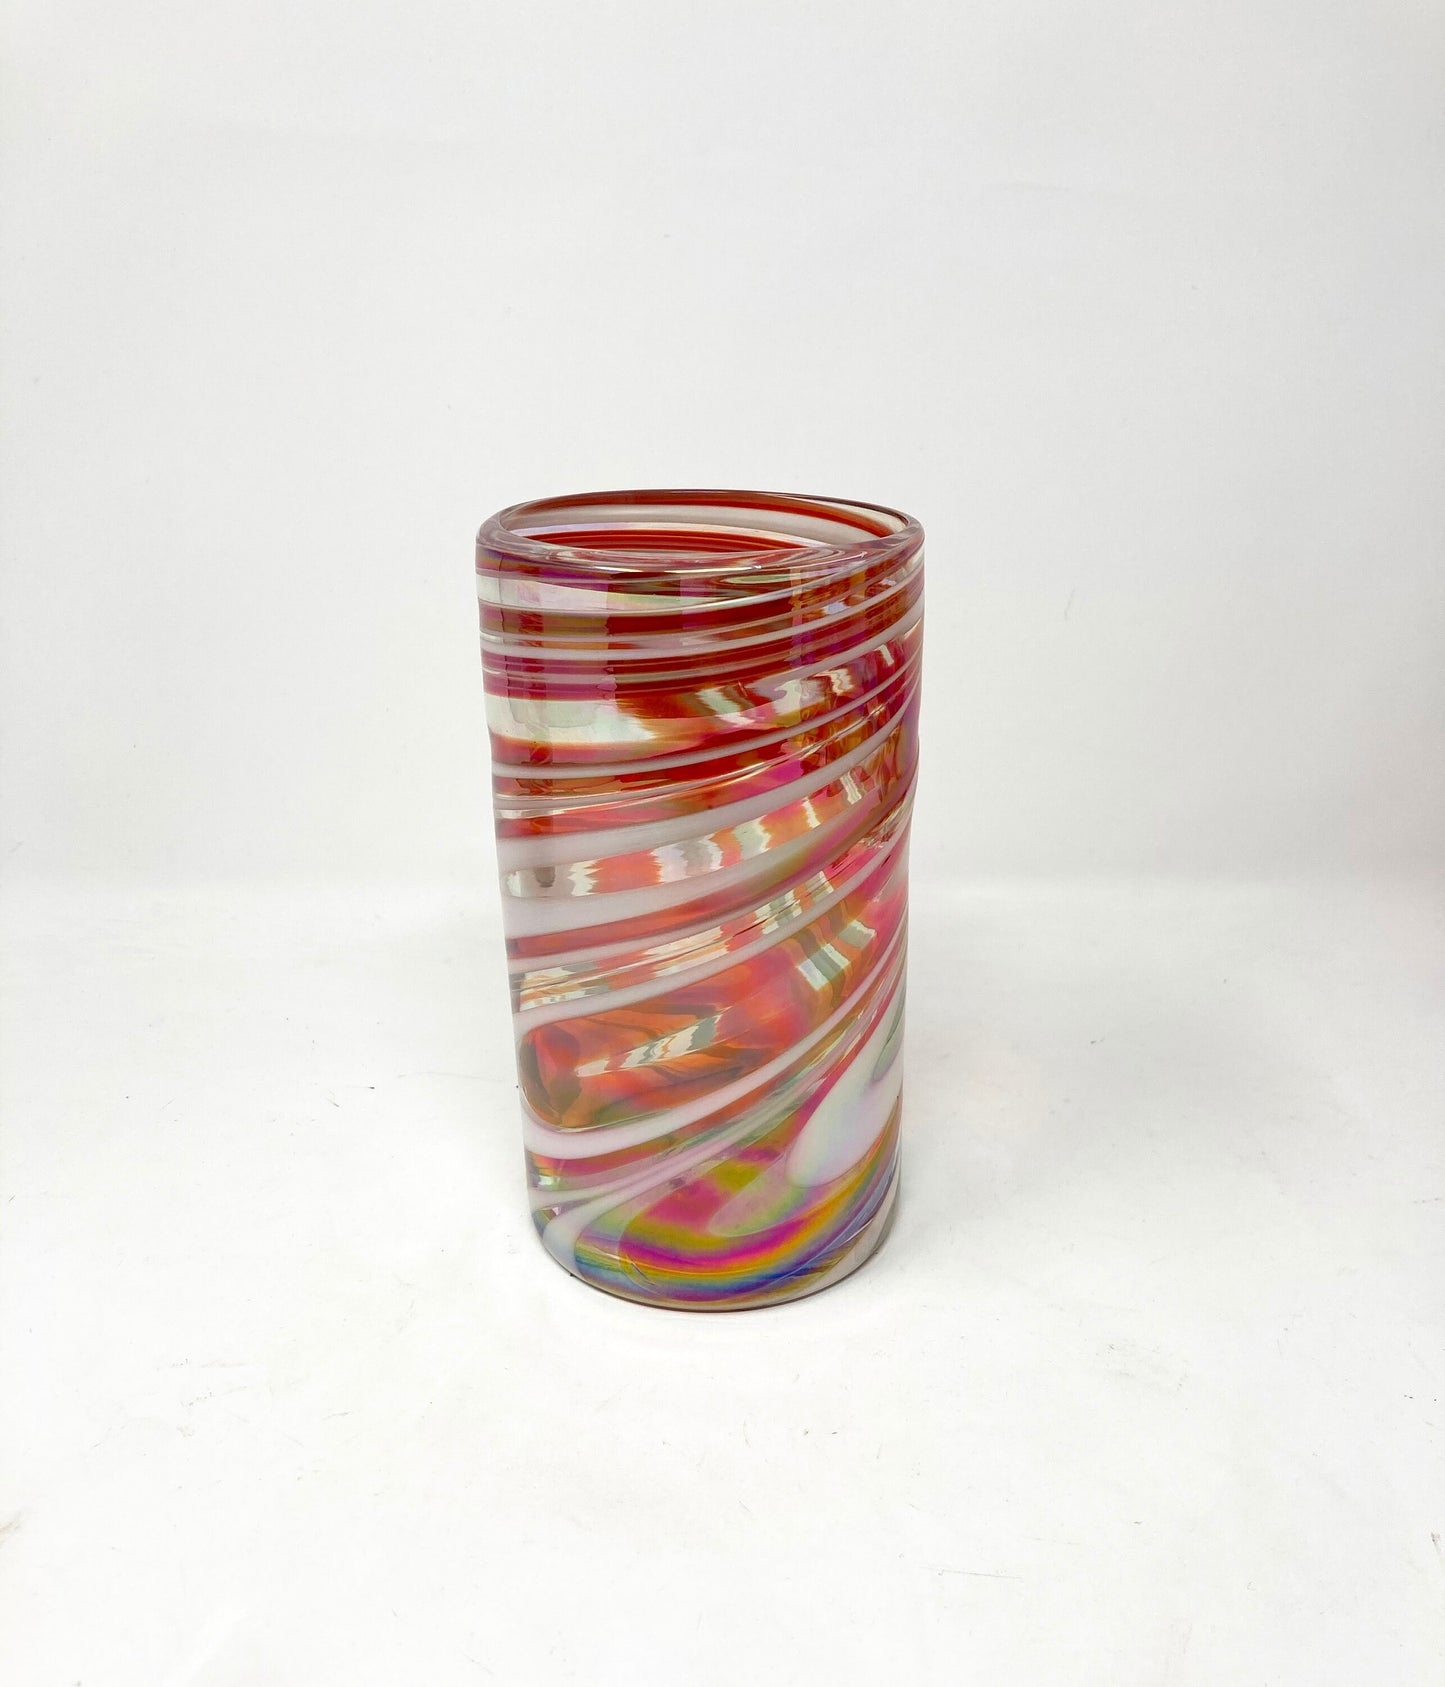 Hand Blown Water Glass - Red/White Iridescent Swirl